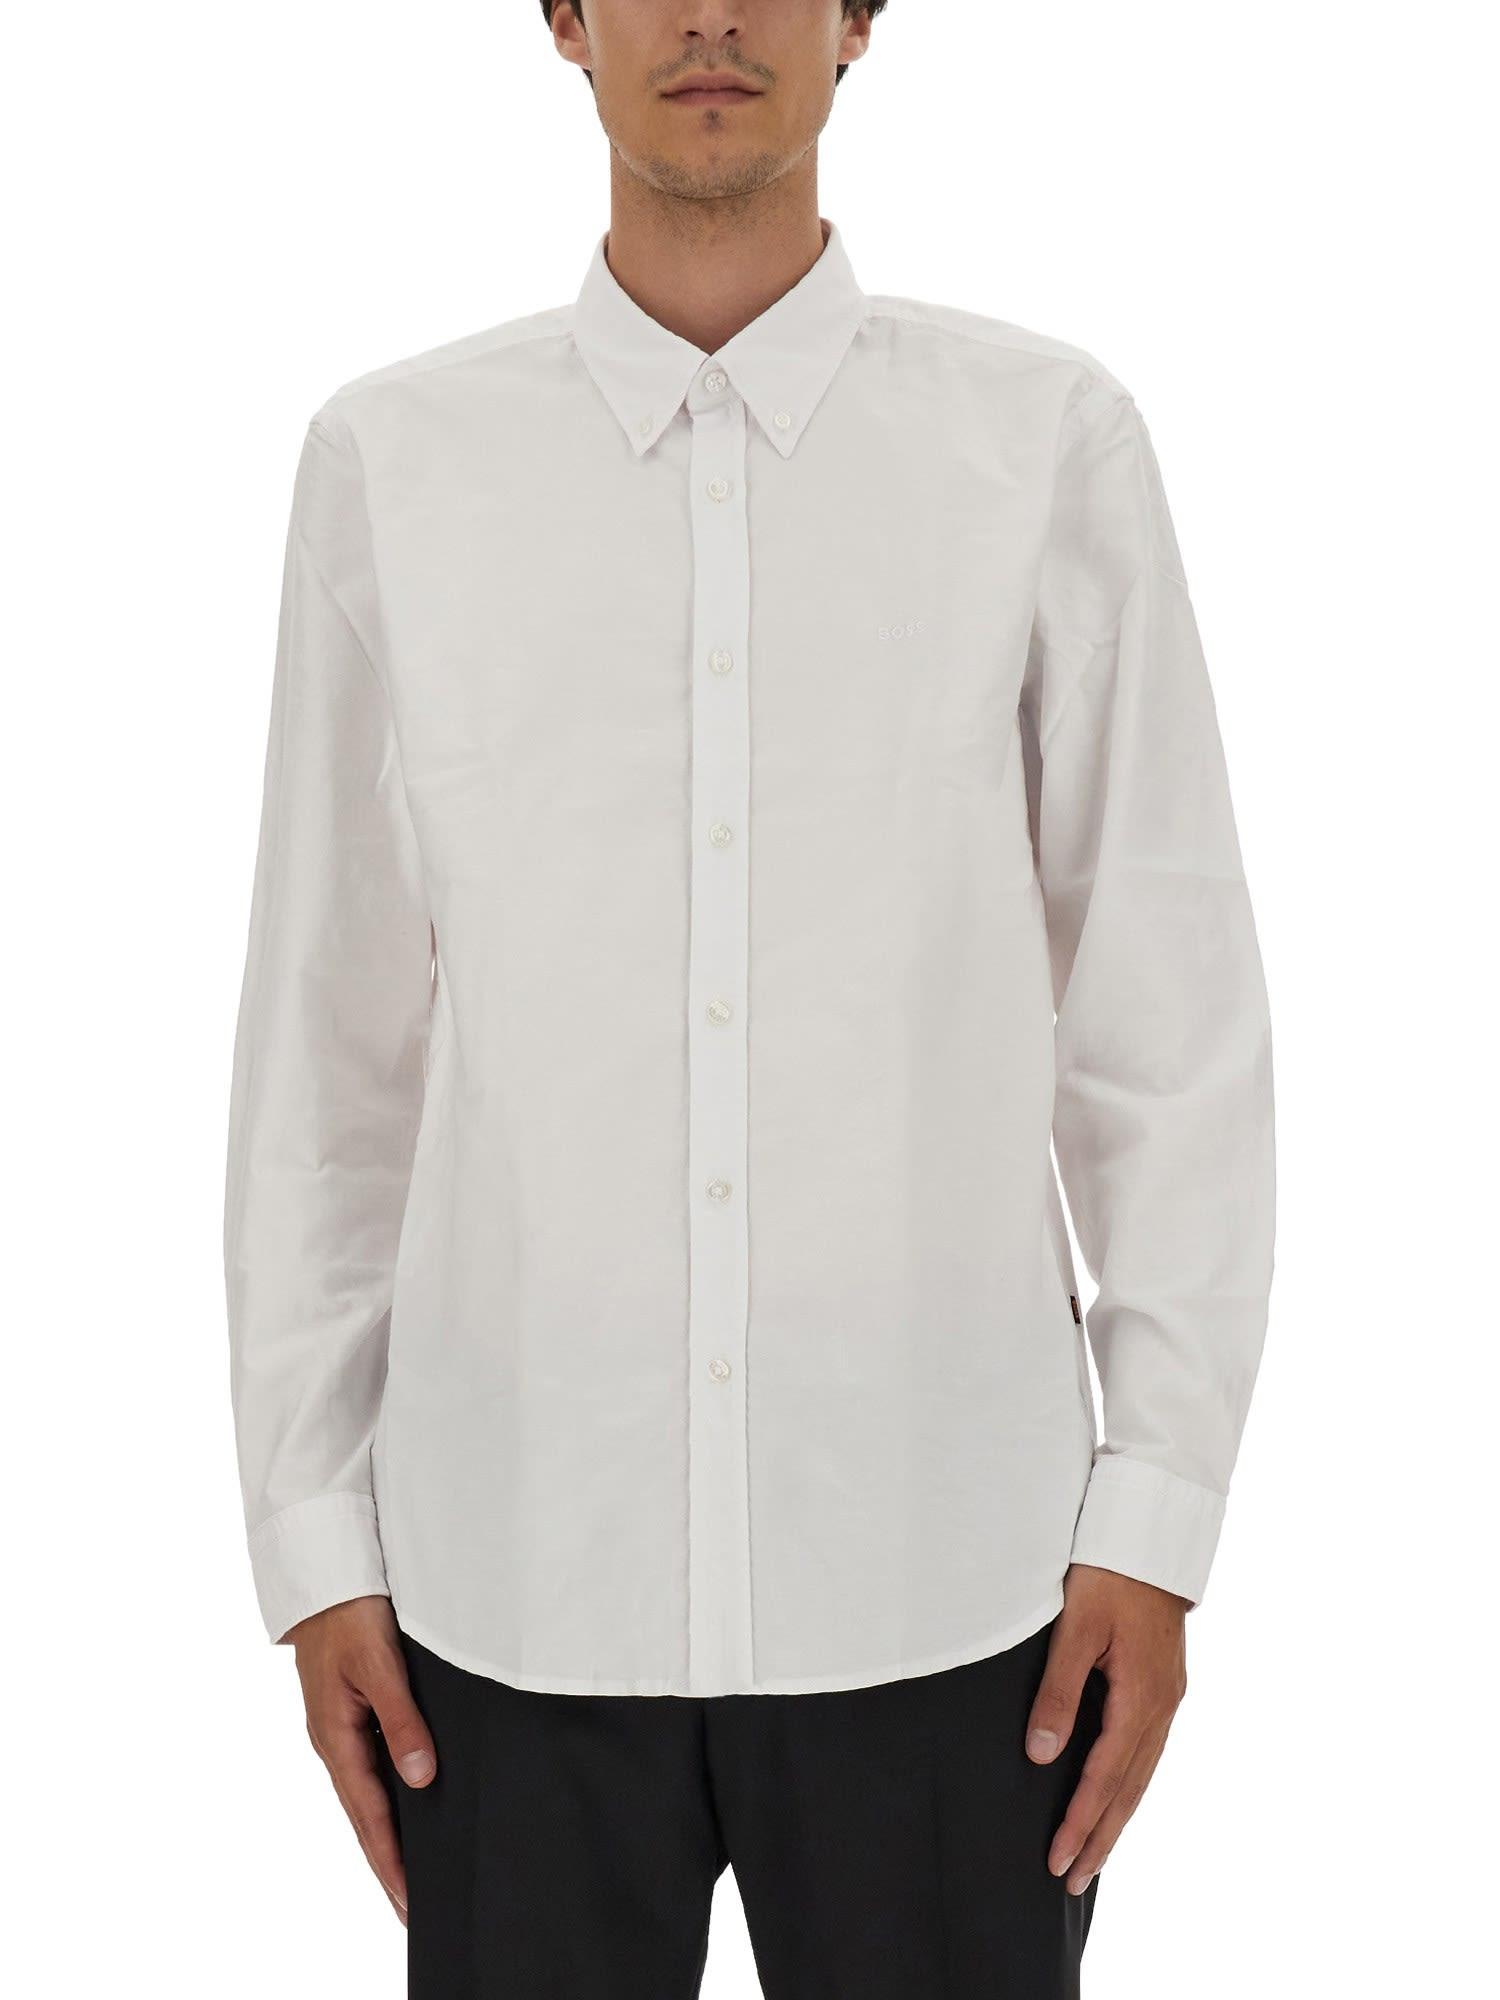 BOSS by HUGO BOSS Wool Shirt in White for Men | Lyst